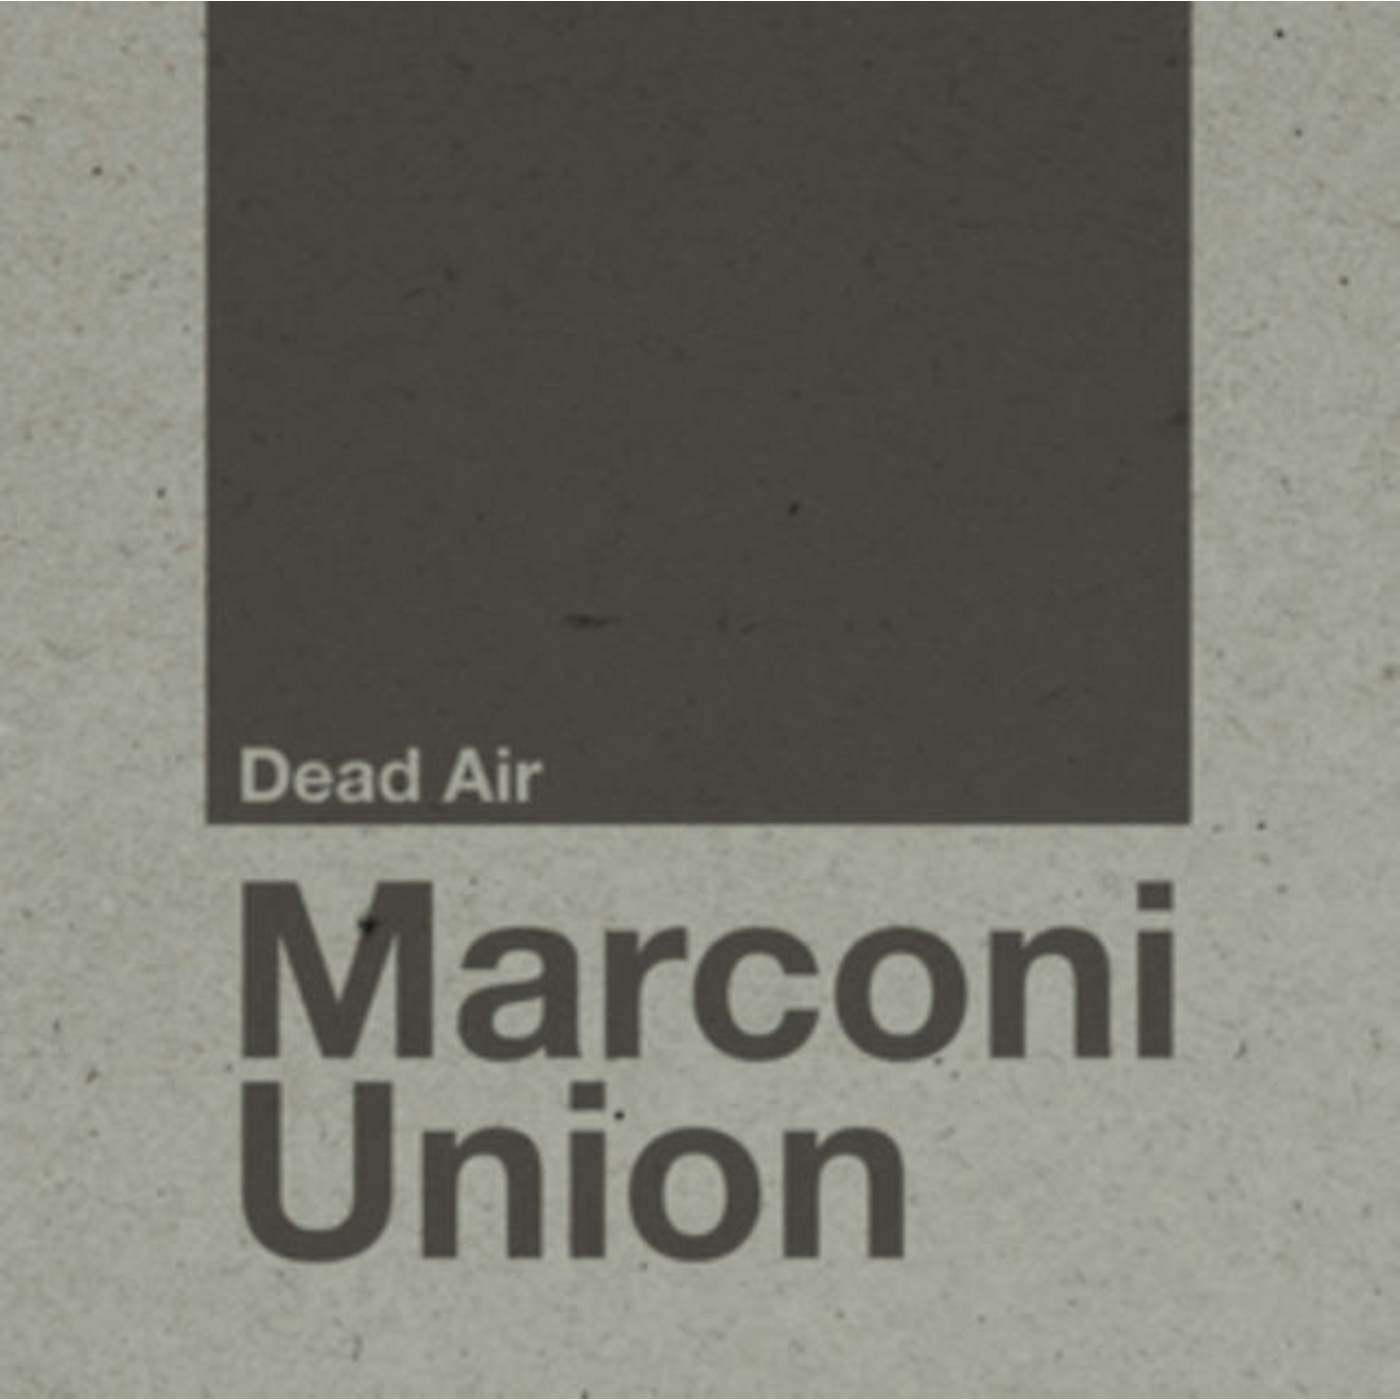 Marconi Union LP - Dead Air (Vinyl)